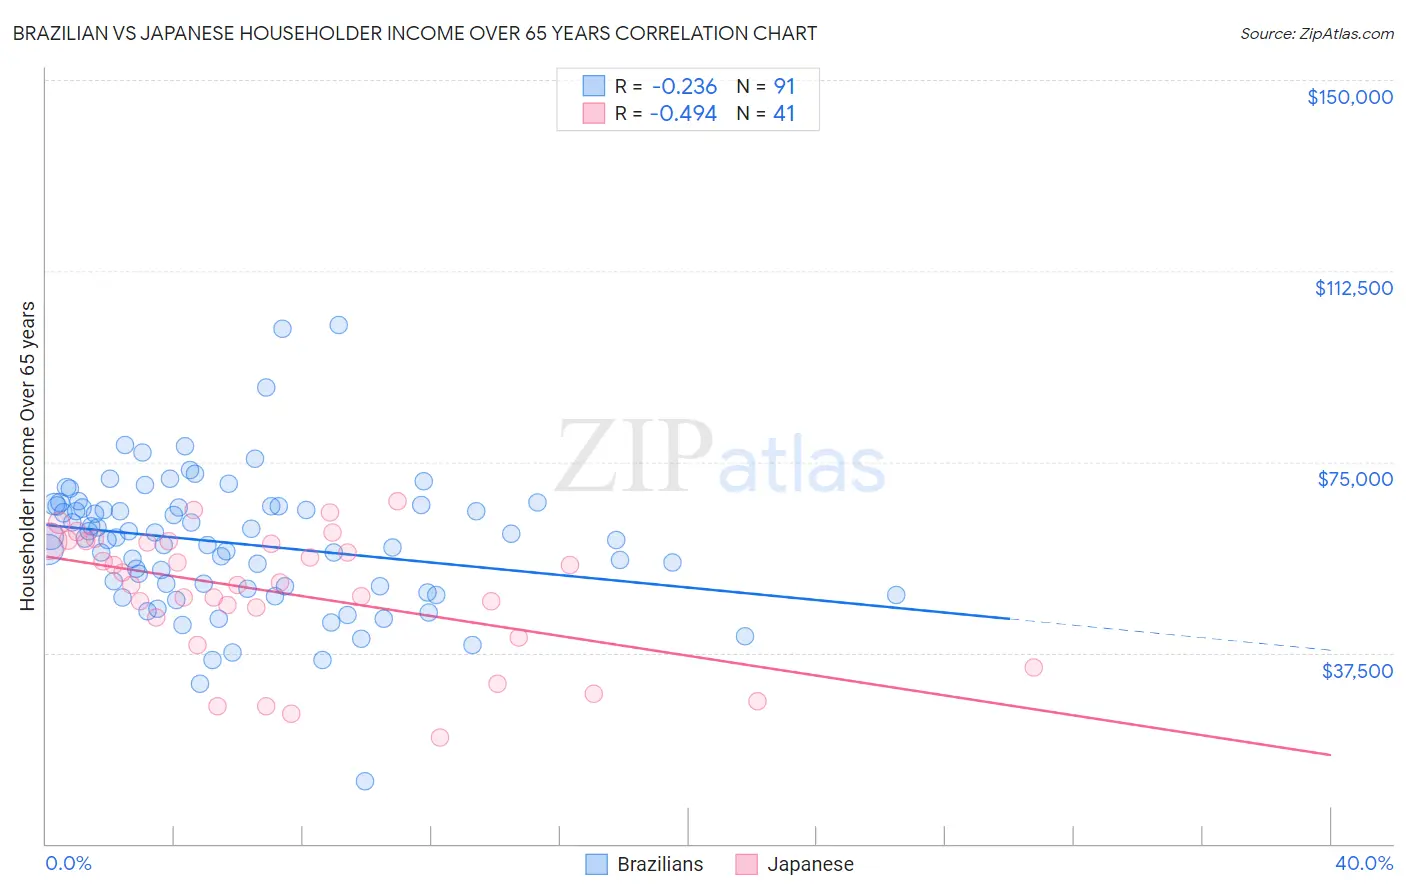 Brazilian vs Japanese Householder Income Over 65 years